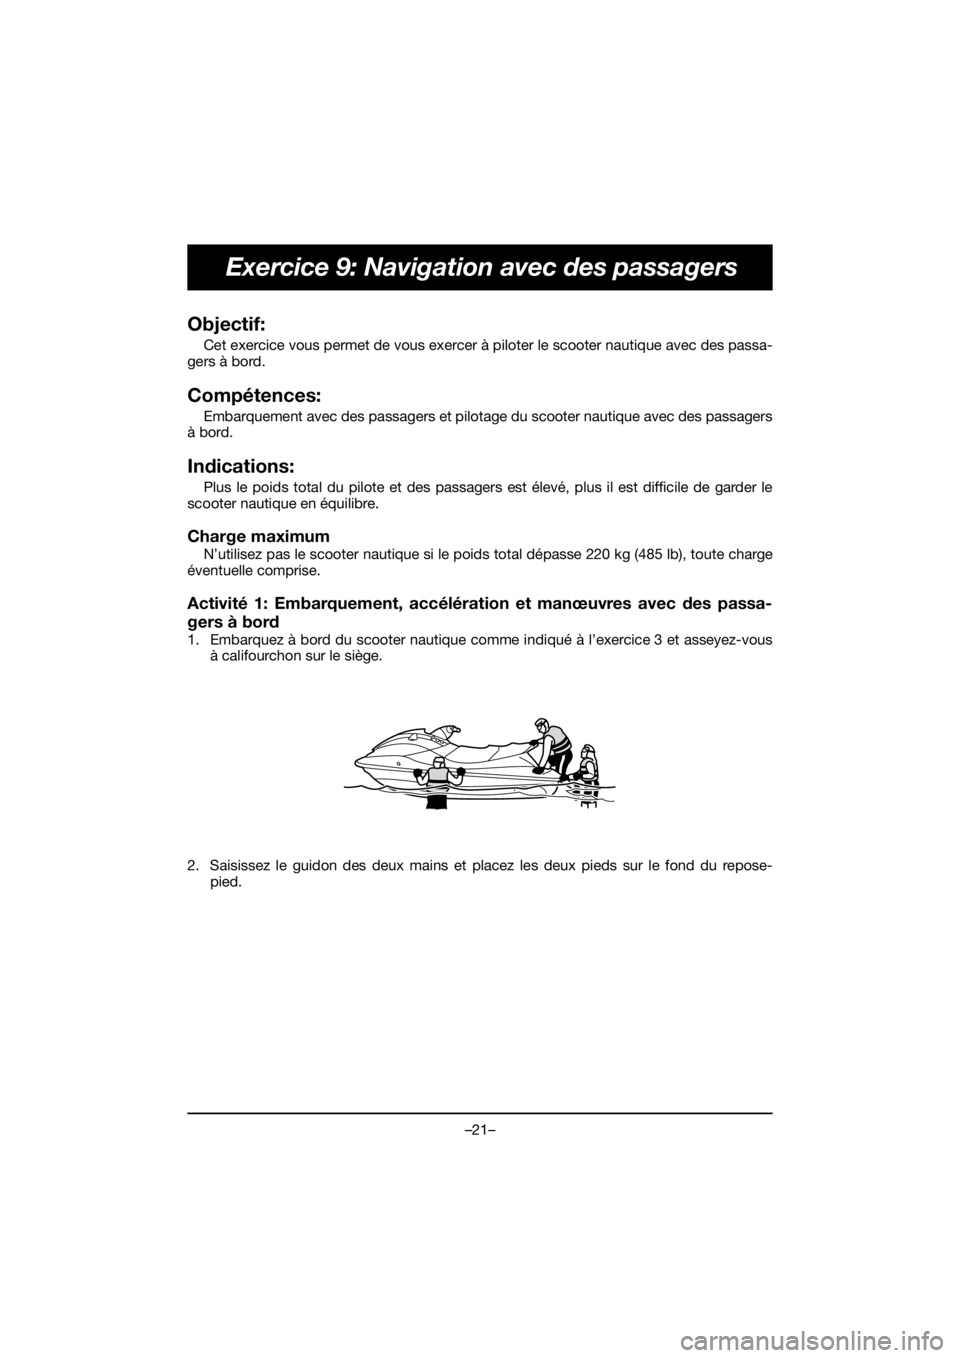 YAMAHA EX DELUXE 2019  Bruksanvisningar (in Swedish) –21–
Exercice 9: Navigation avec des passagers
Objectif: 
Cet exercice vous permet de vous exercer à piloter le scooter nautique avec des passa-
gers à bord.
Compétences: 
Embarquement avec des